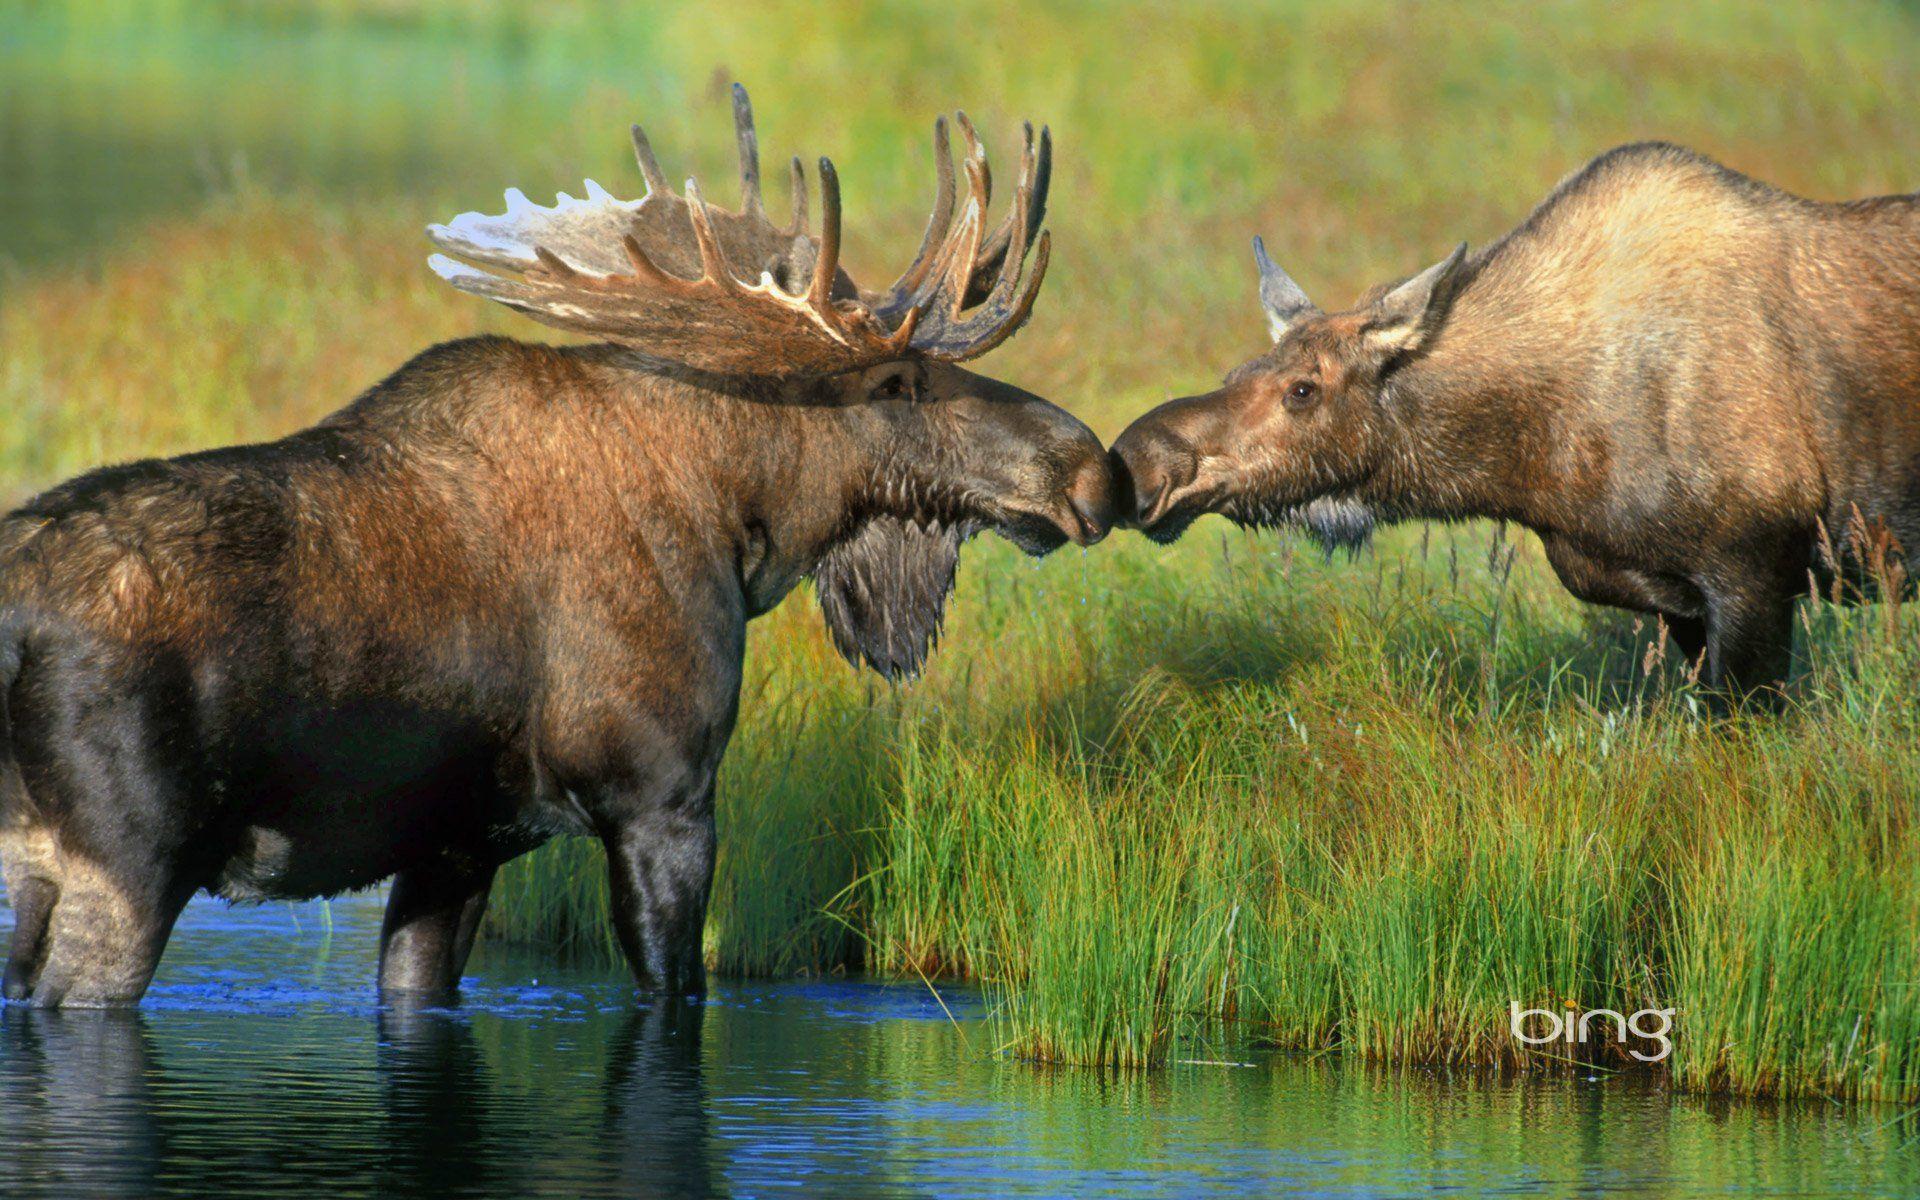 Moose HD Wallpaper. Background. Moose animal, Moose picture, Animal wallpaper